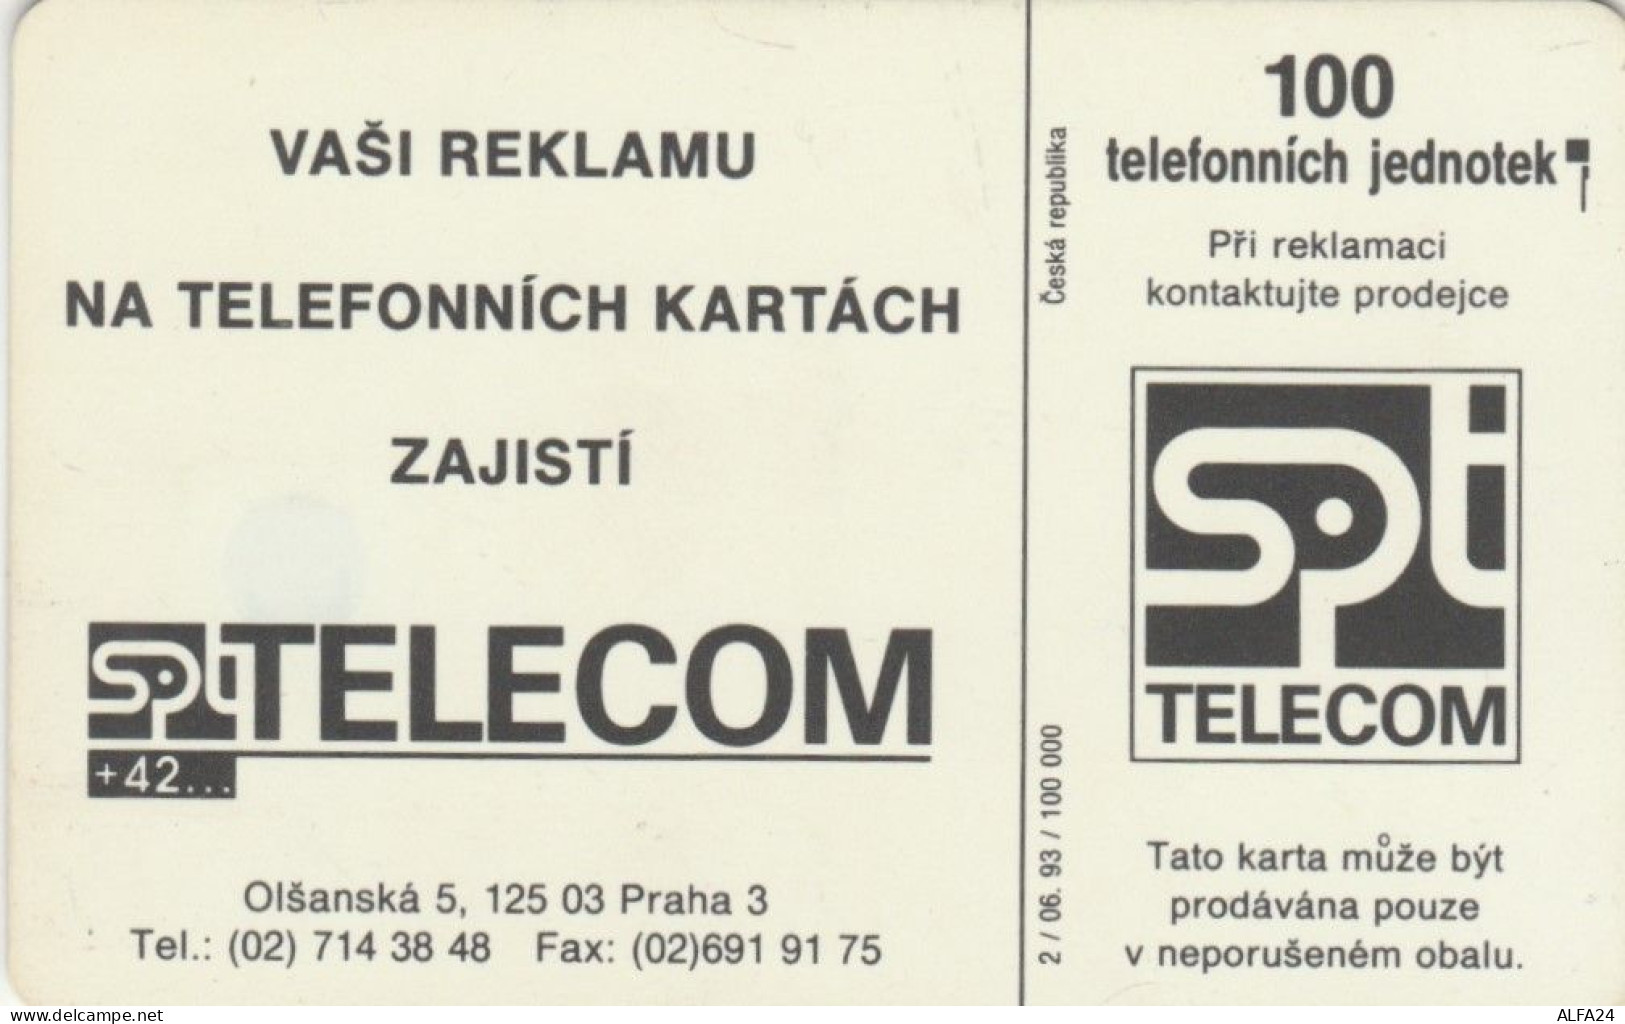 PHONE CARD REPUBBLICA CECA  (E100.17.8 - Czech Republic